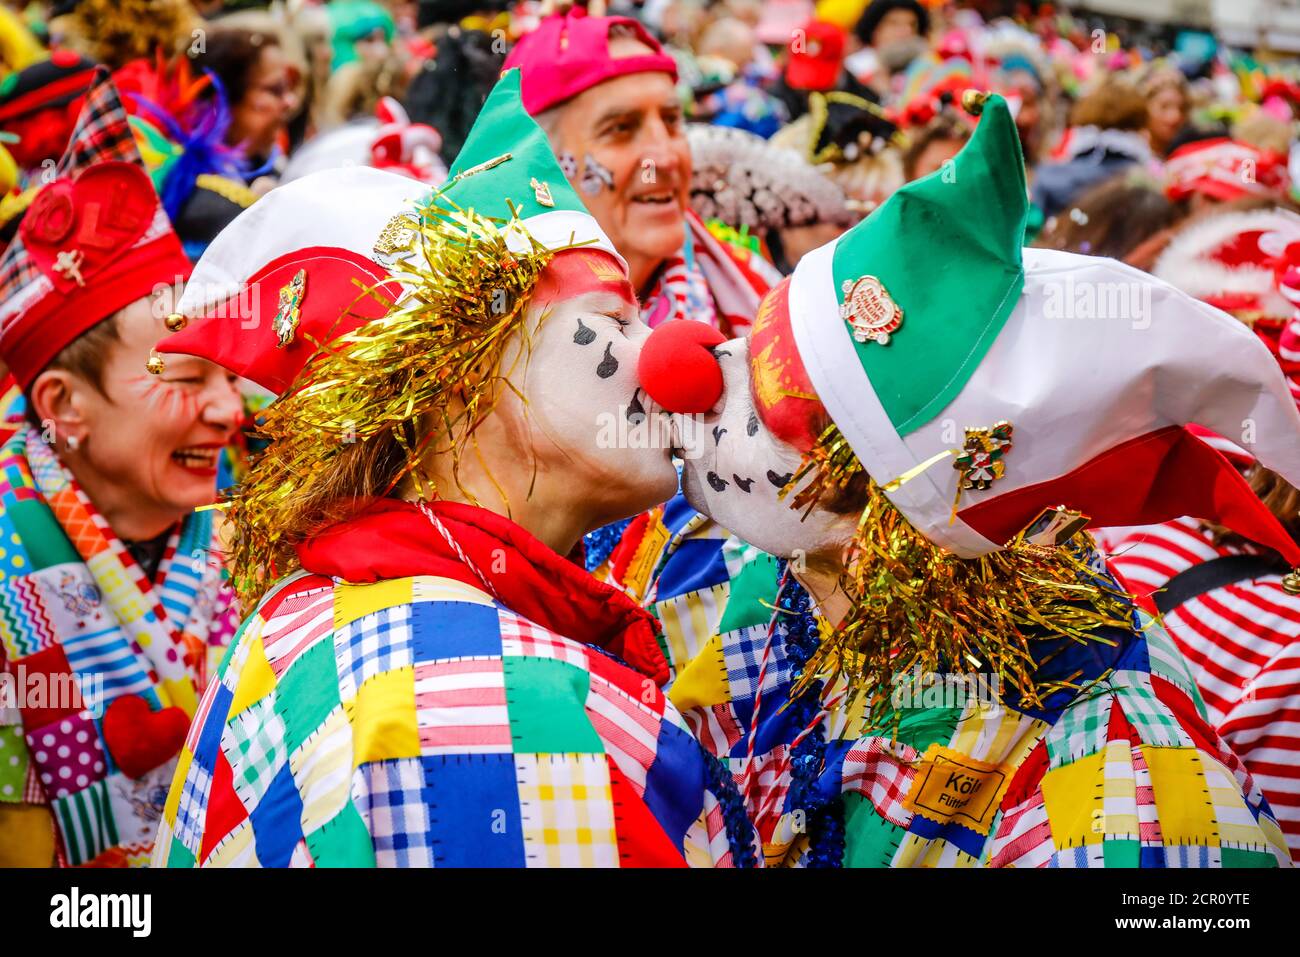 Bunt kostümierte Karnevalsfeiern in Köln Karneval, an der Weiberfastnacht eröffnet traditionell der Straßenkarneval auf dem Alten Markt, der Stockfoto